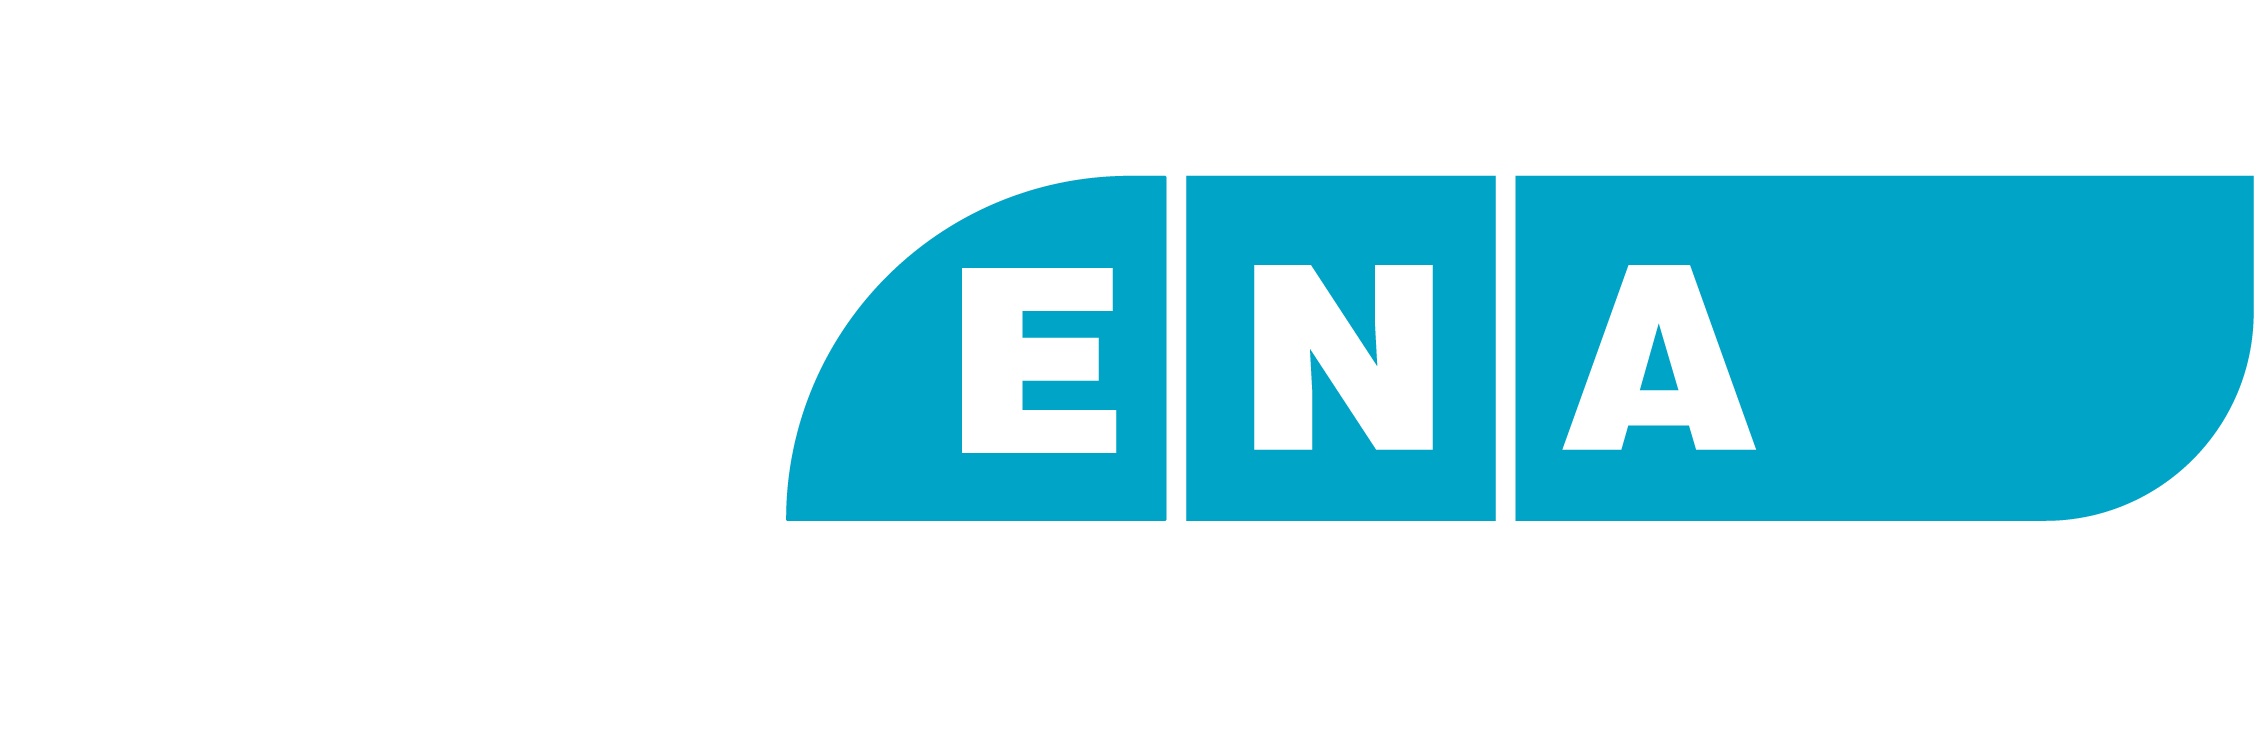 ena_logo_slogan_eng